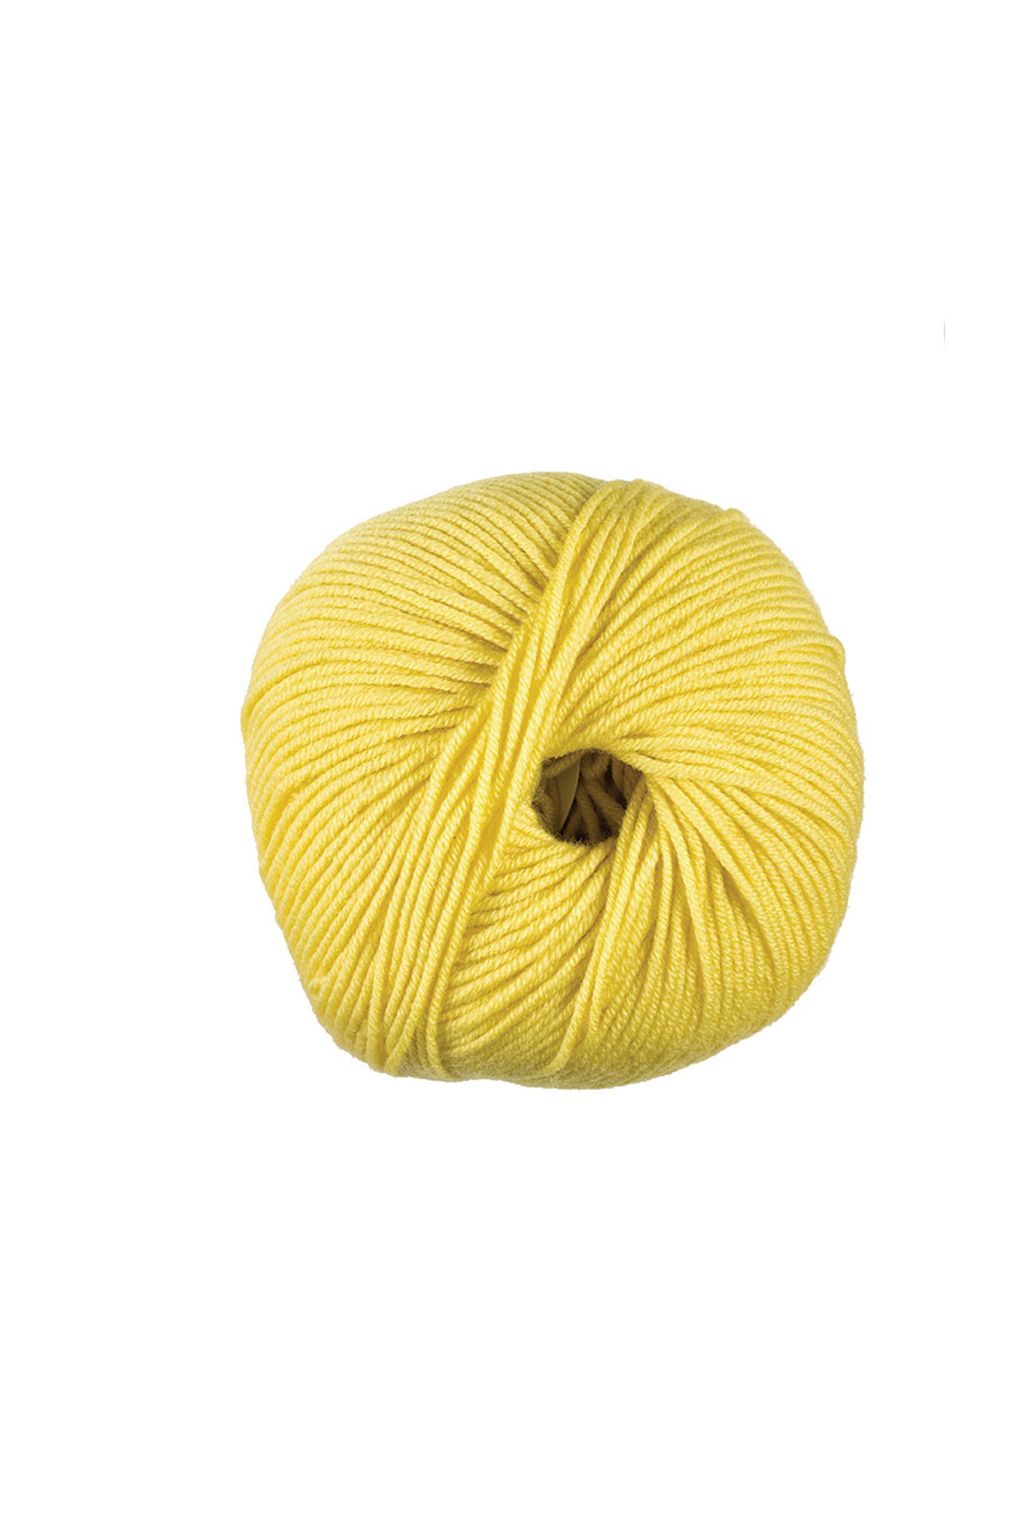 Woolly Pura Lana Merino DMC art 488 – Per filo e per segno